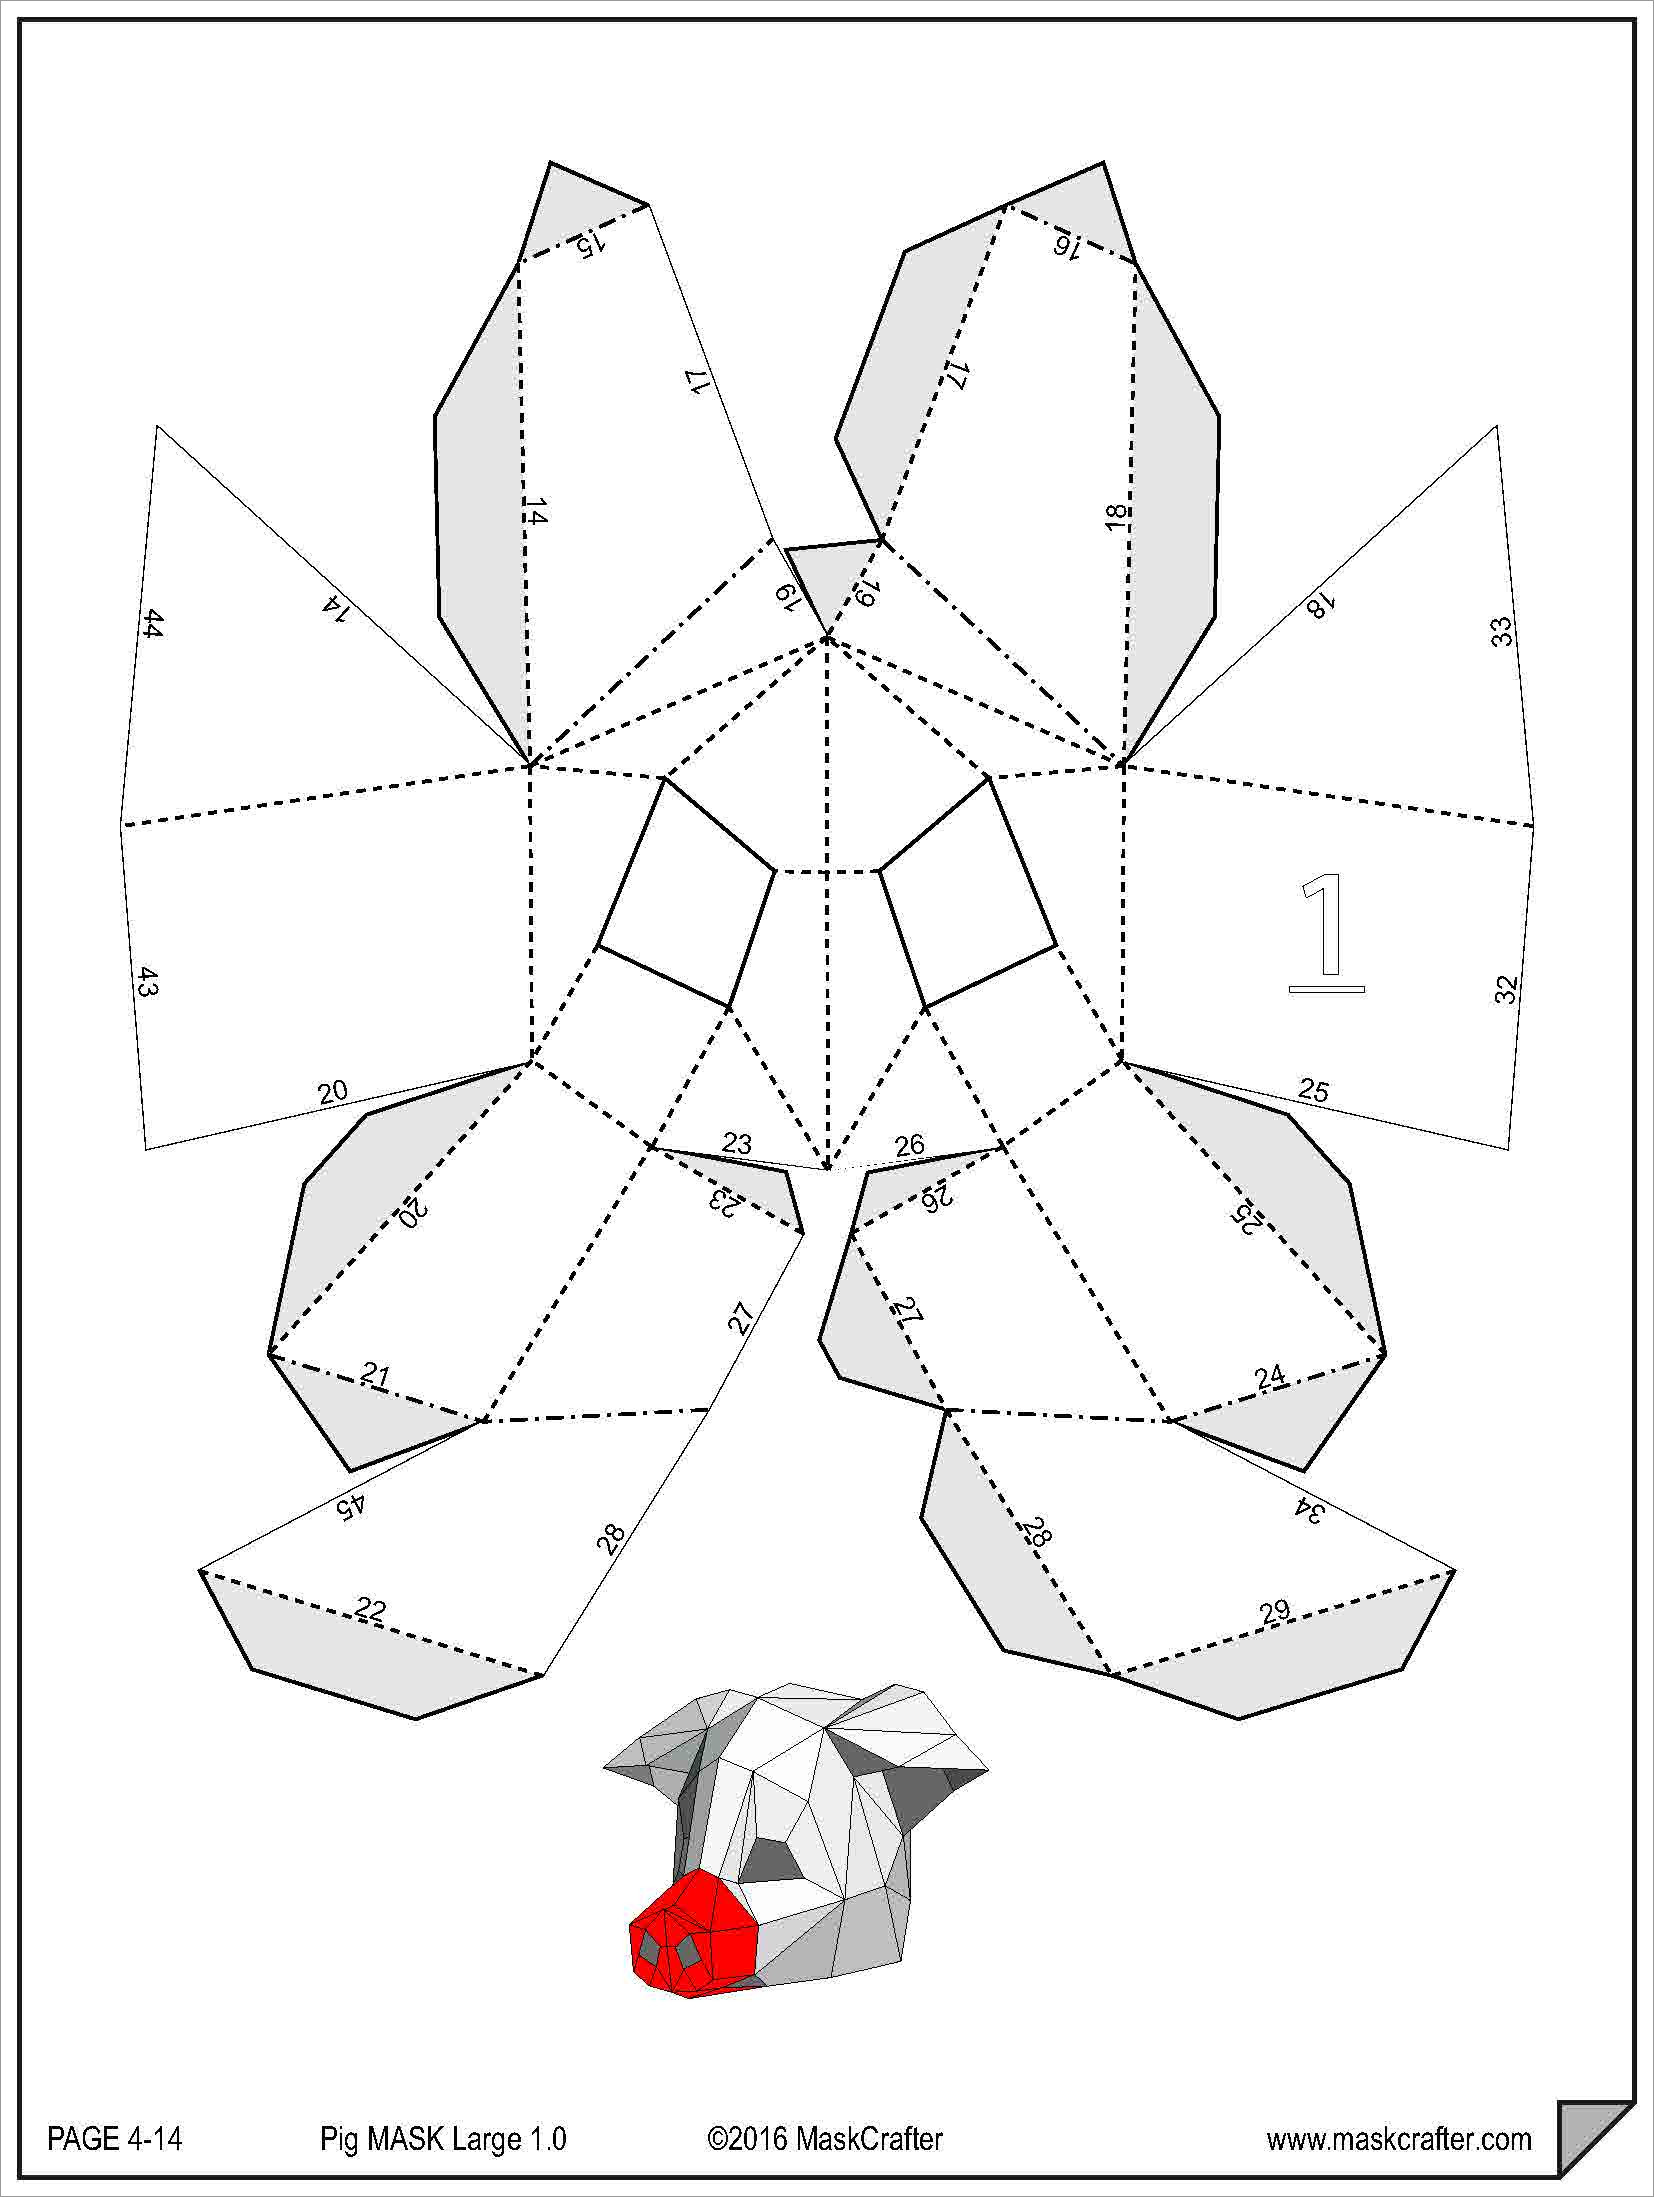 papercraft-masks-pig-mask-papercraft-template-printable-papercrafts